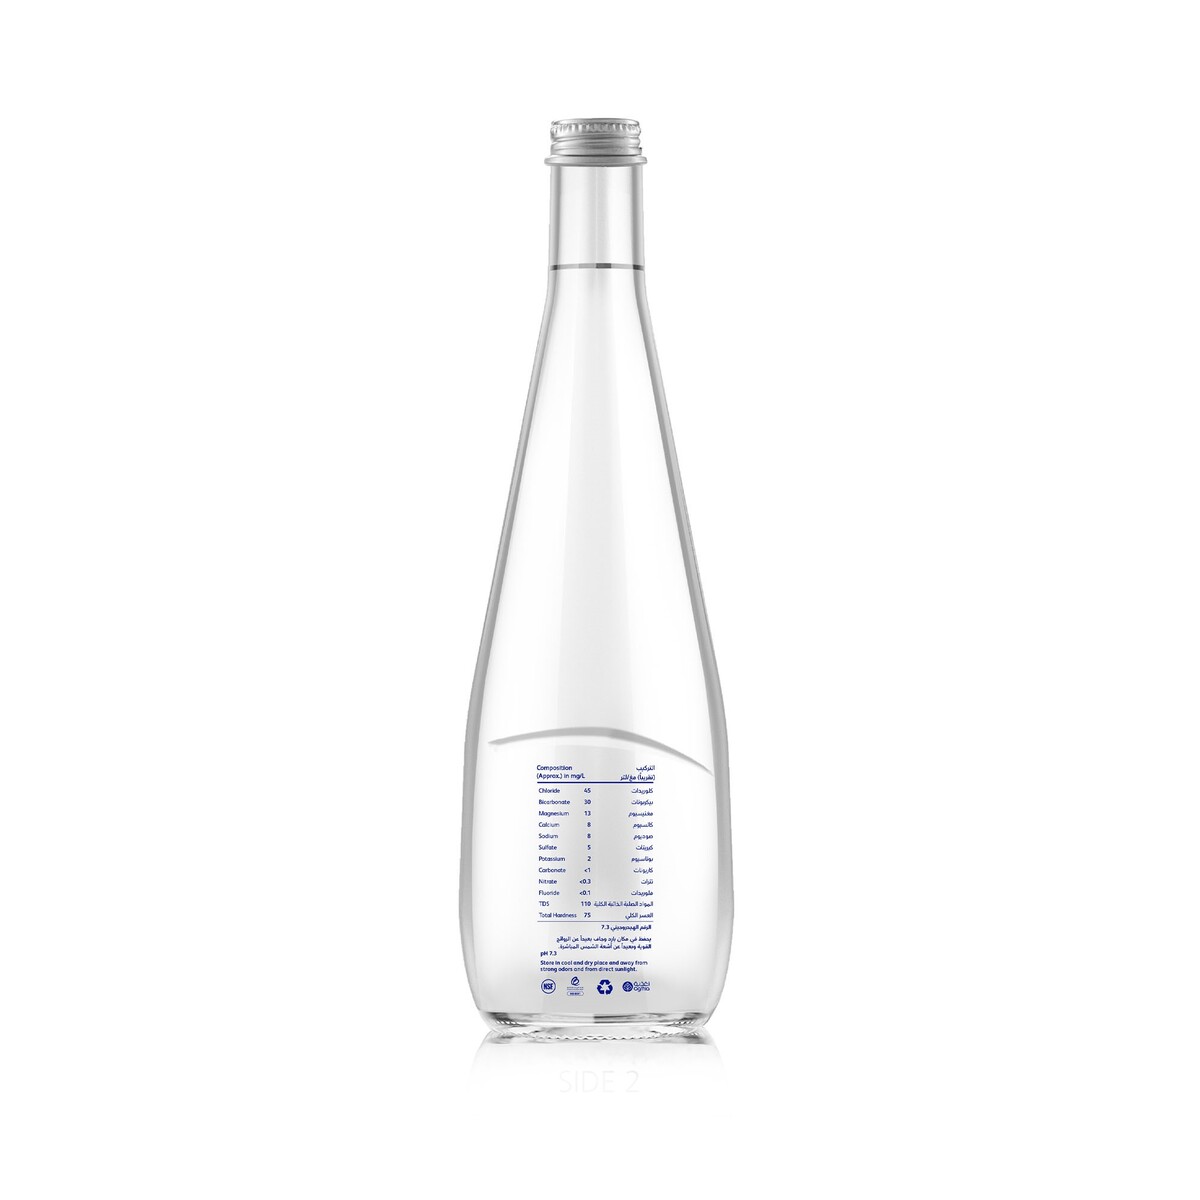 Al Ain Bottled Drinking Water 6 x 330 ml